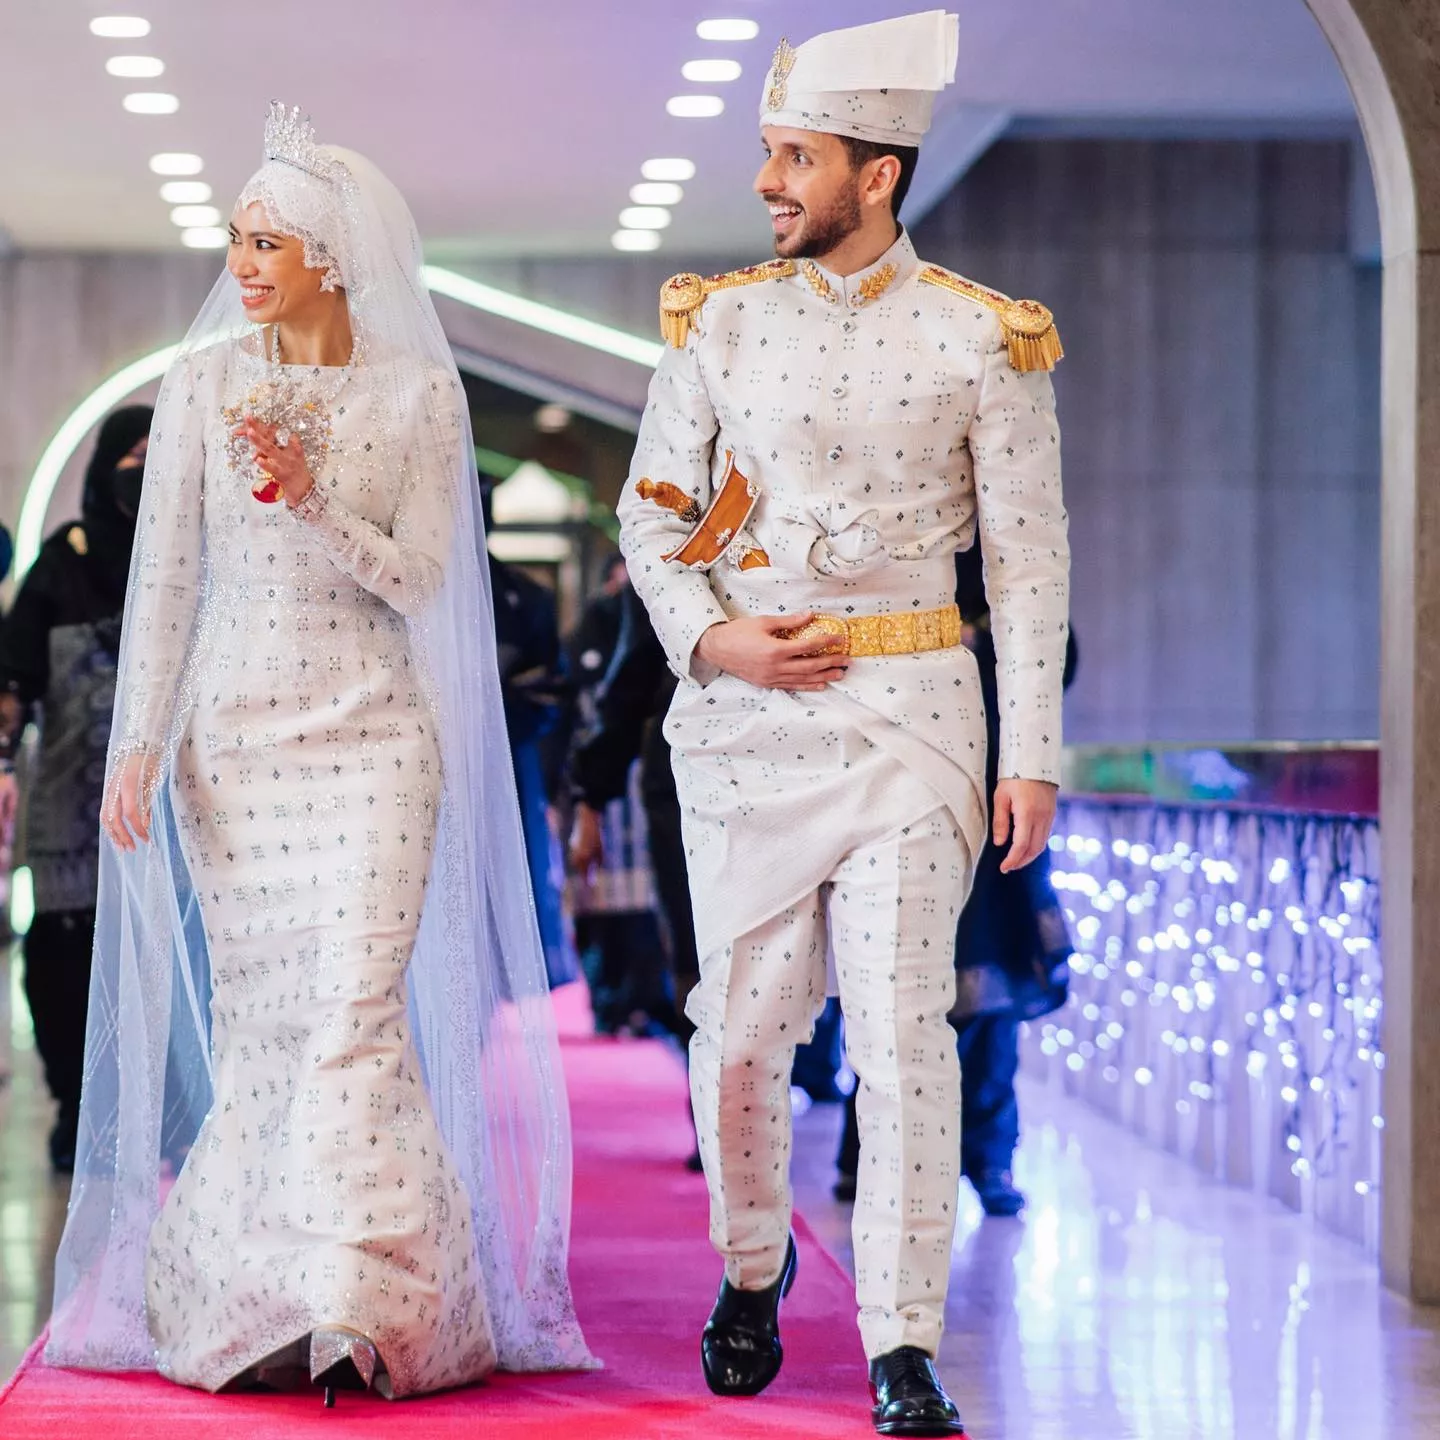 Дубаи выйти замуж. Свадьба принцессы Брунея. Свадьба принцессы Брунея Хафизы. Фадзила принцесса Брунея. Принцесса Фадзилла свадьба.